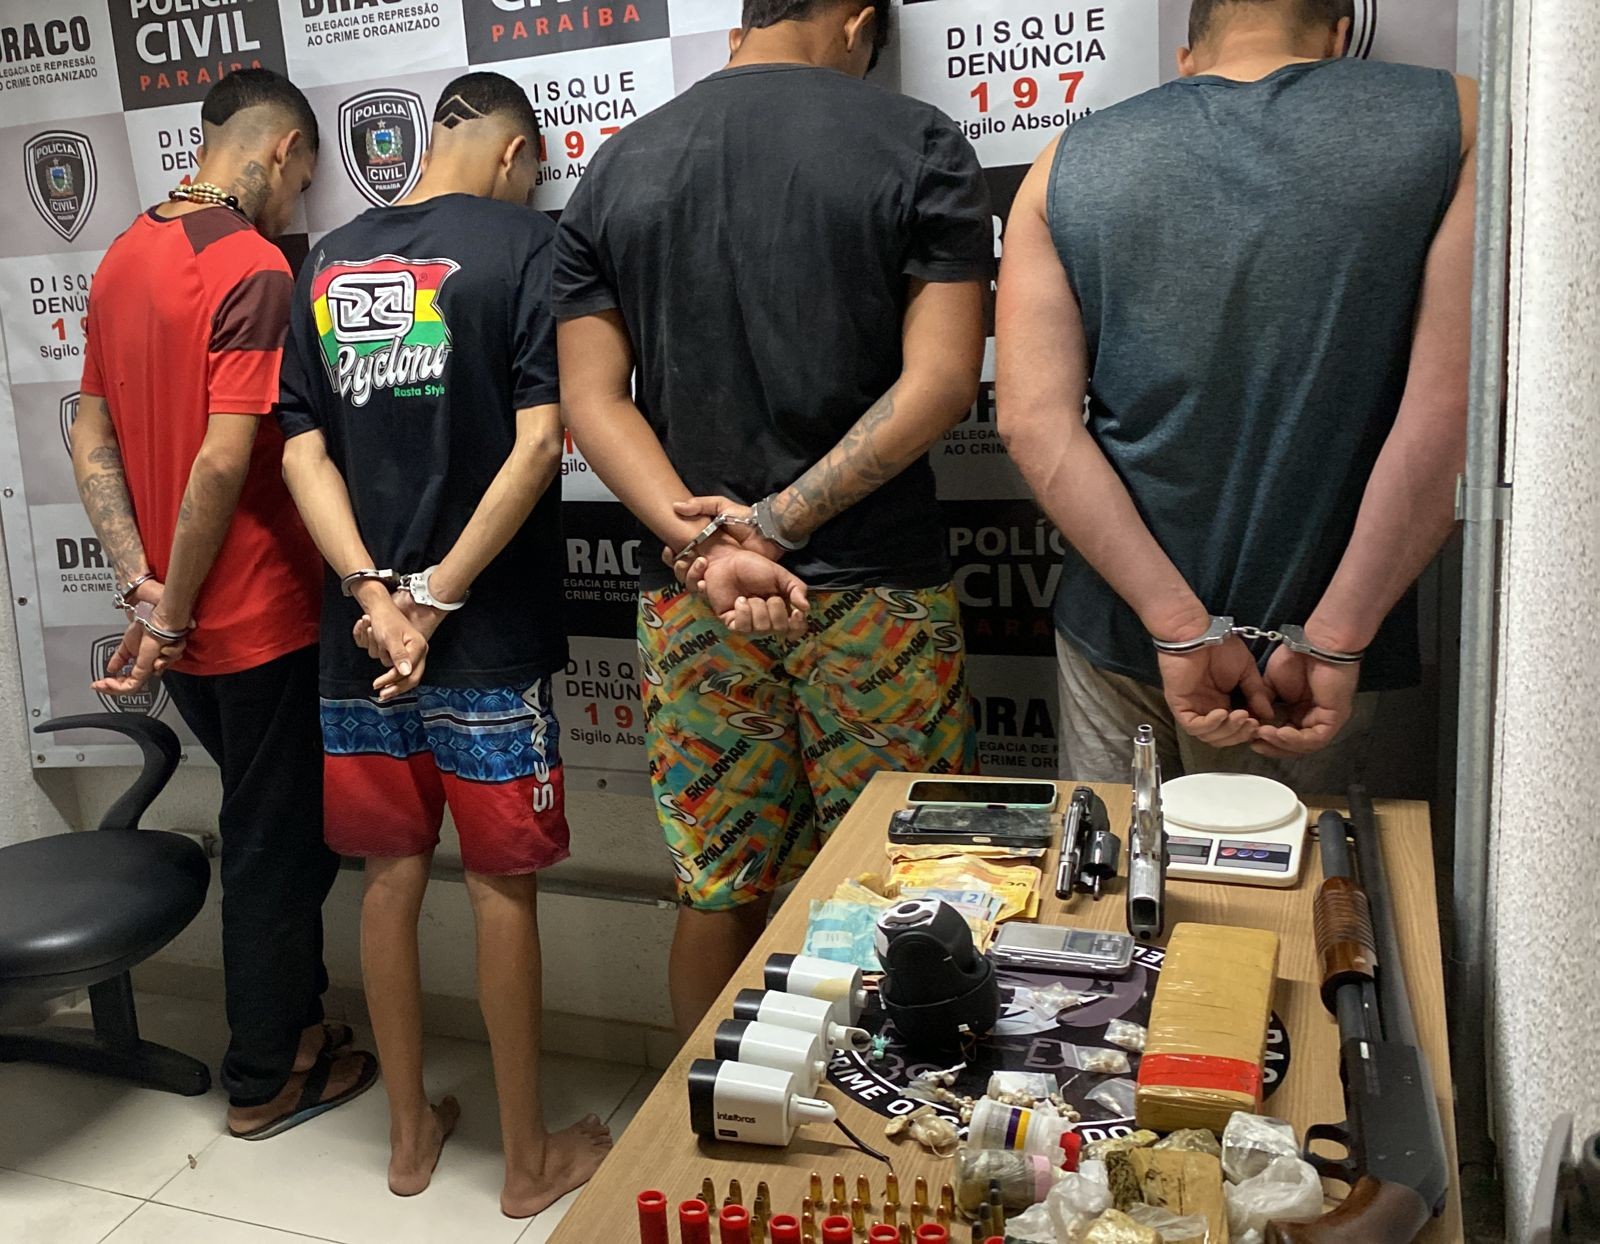 Operação prende homens suspeitos de de participação em organização criminosa em Cabedelo, PB